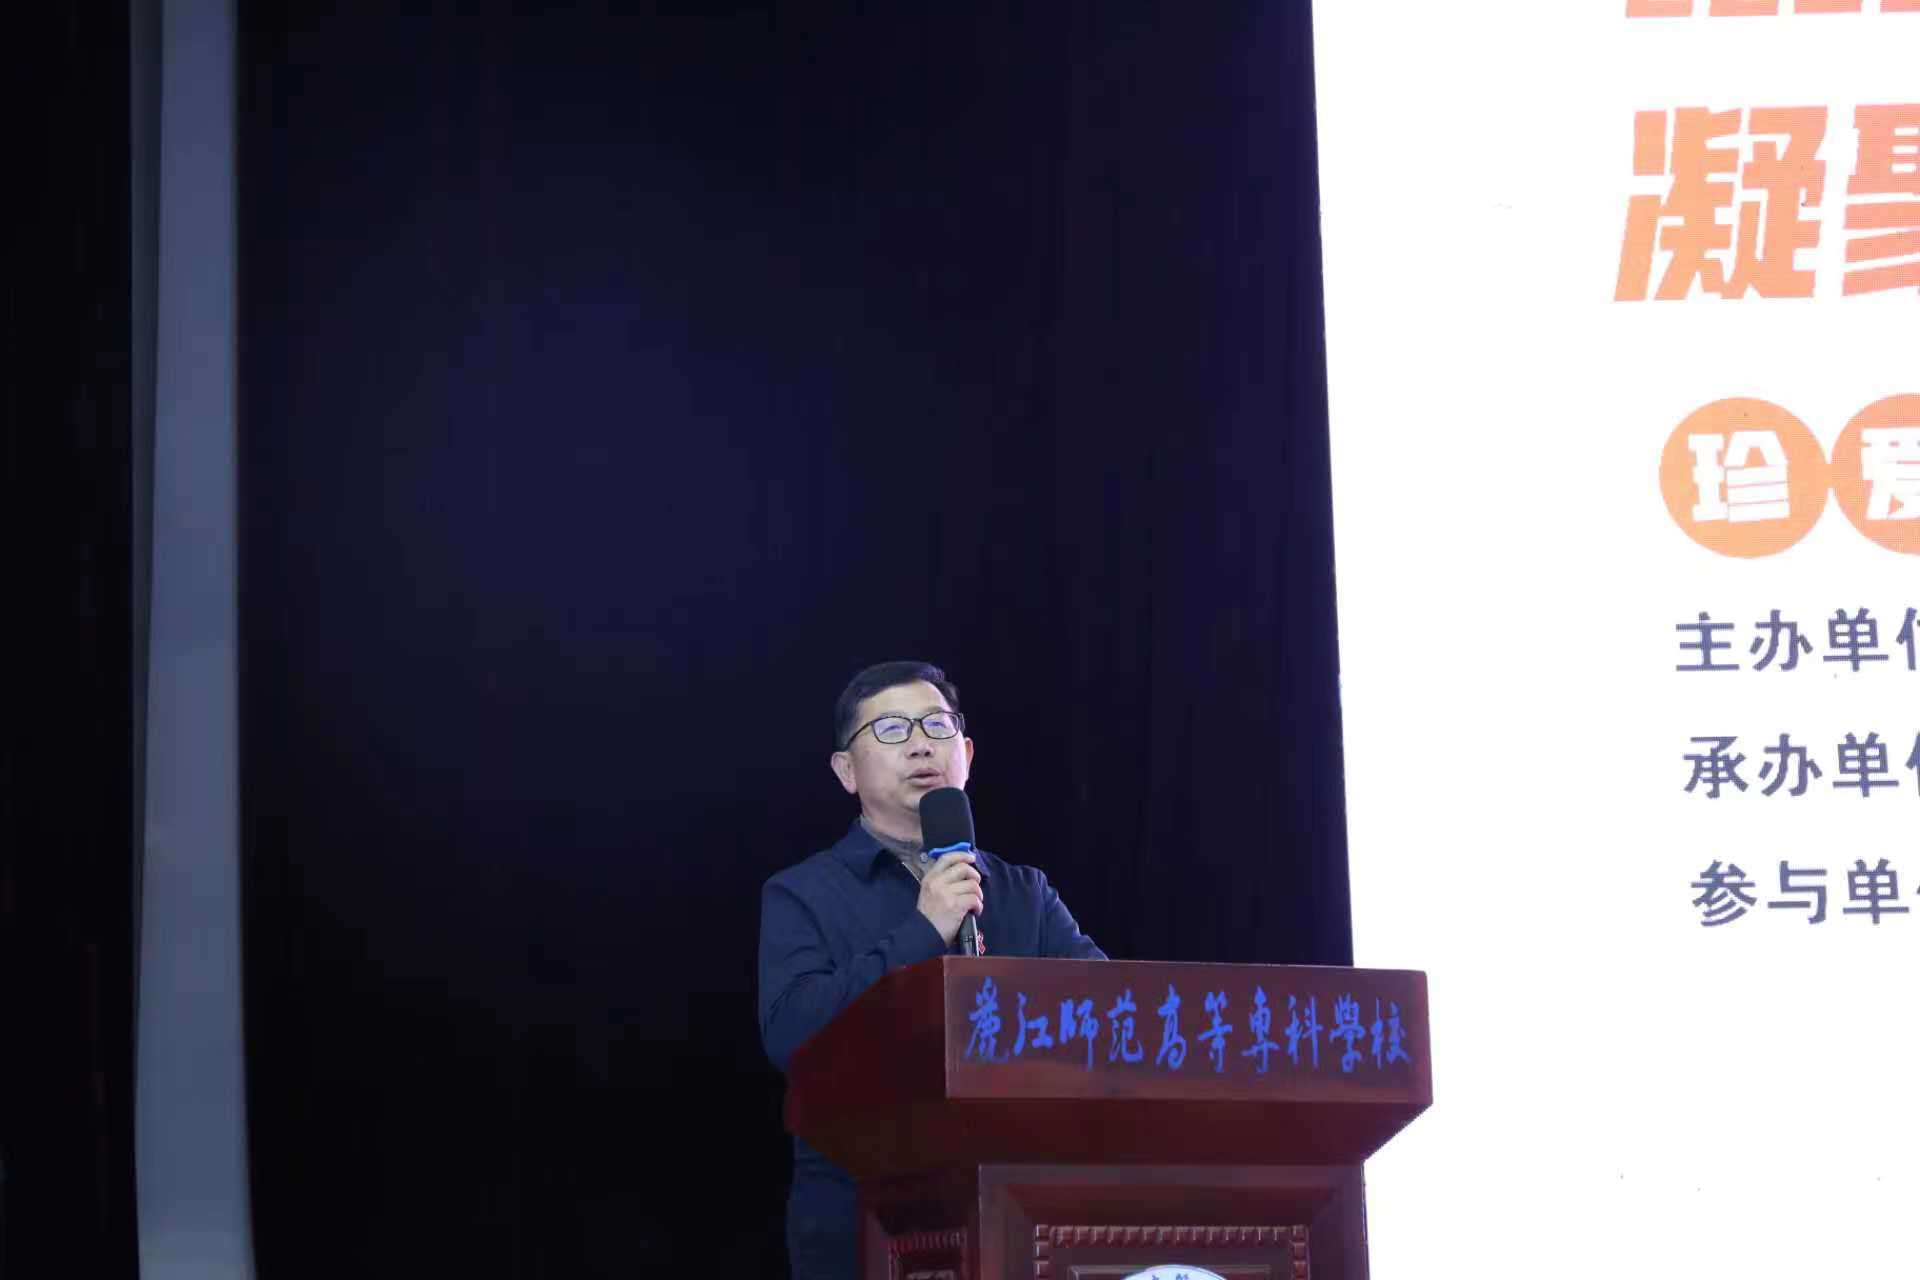 丽江市举办第36个“世界艾滋病日”宣传活动，呼吁凝聚社会力量共抗艾滋病 (3).jpg